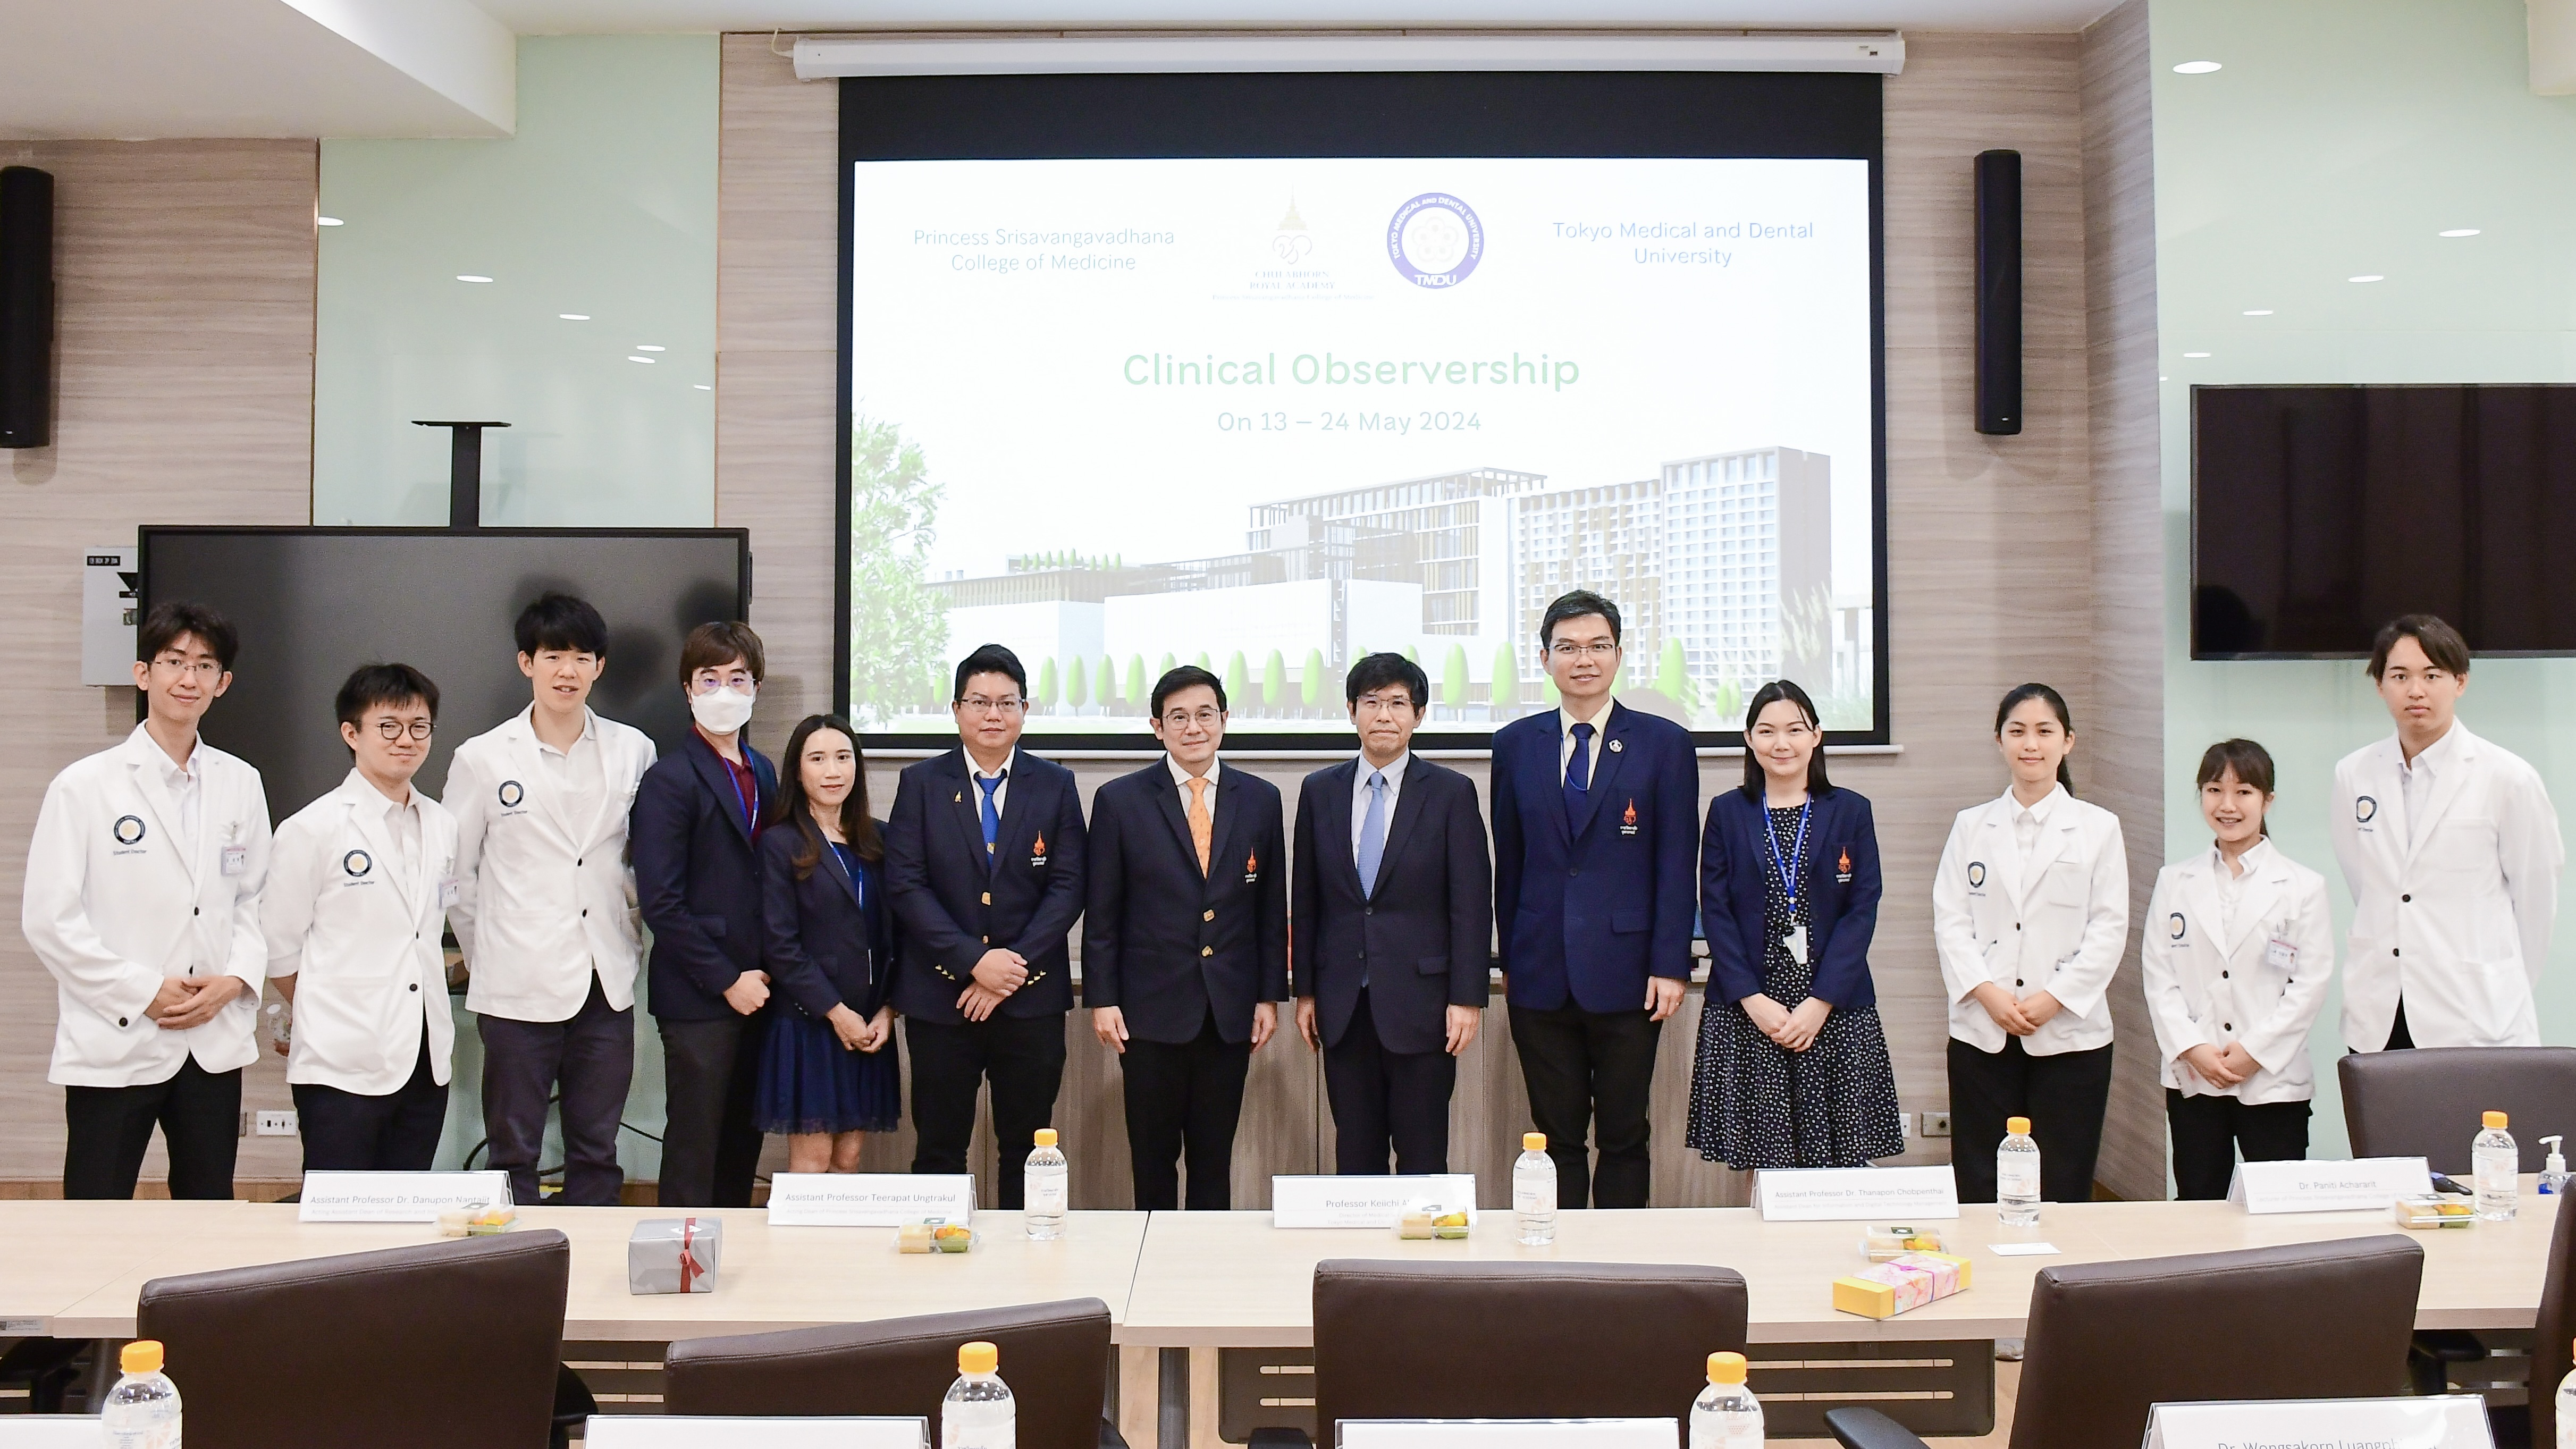 นักศึกษาแพทย์จากประเทศญี่ปุ่นขอศึกษาดูงานการแพทย์ วิทยาลัยแพทยศาสตร์ศรีสวางควัฒน